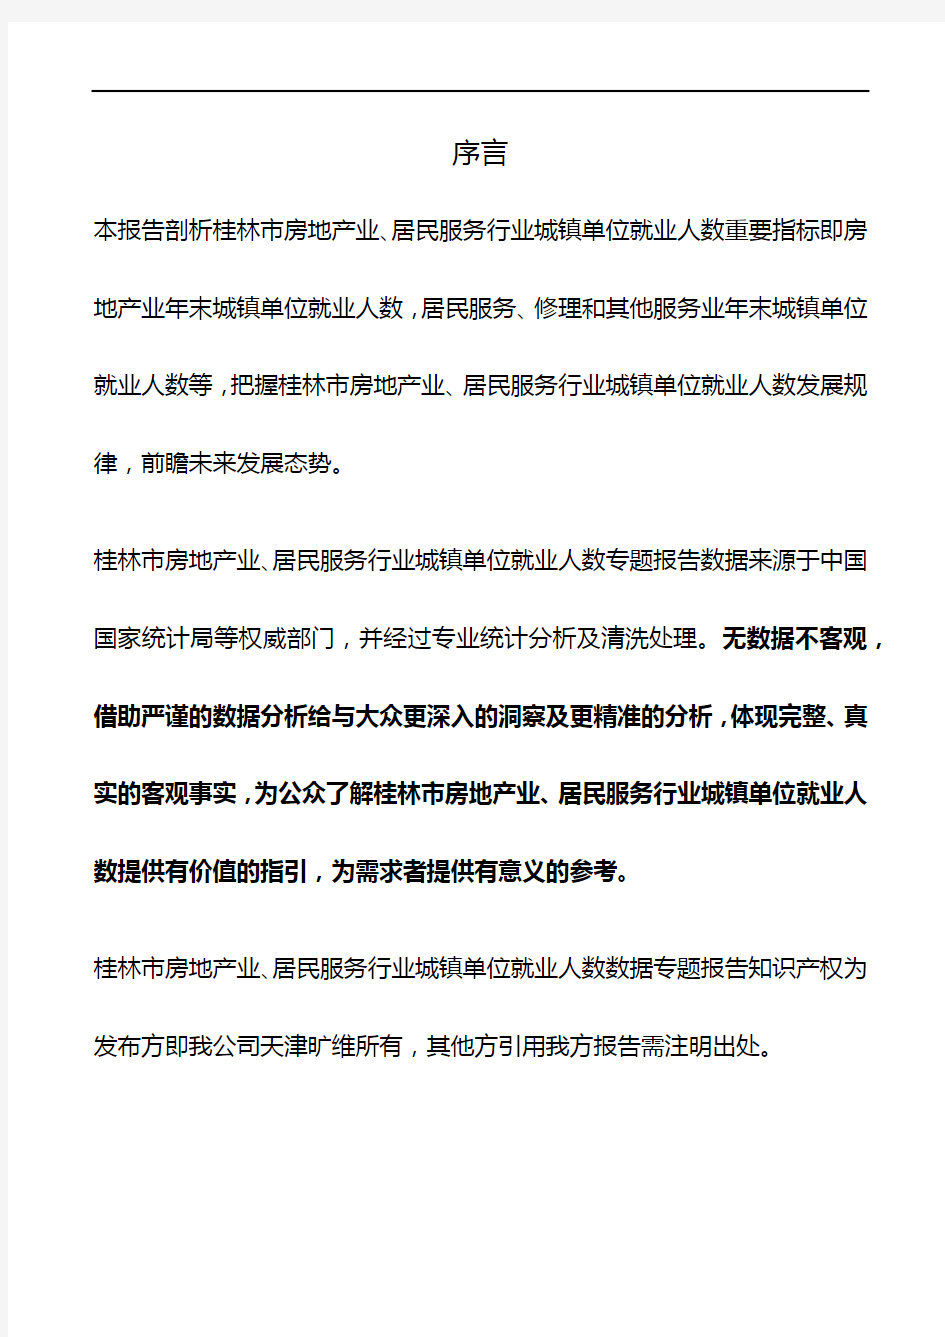 桂林市(市辖区)房地产业、居民服务行业城镇单位就业人数3年数据专题报告2019版